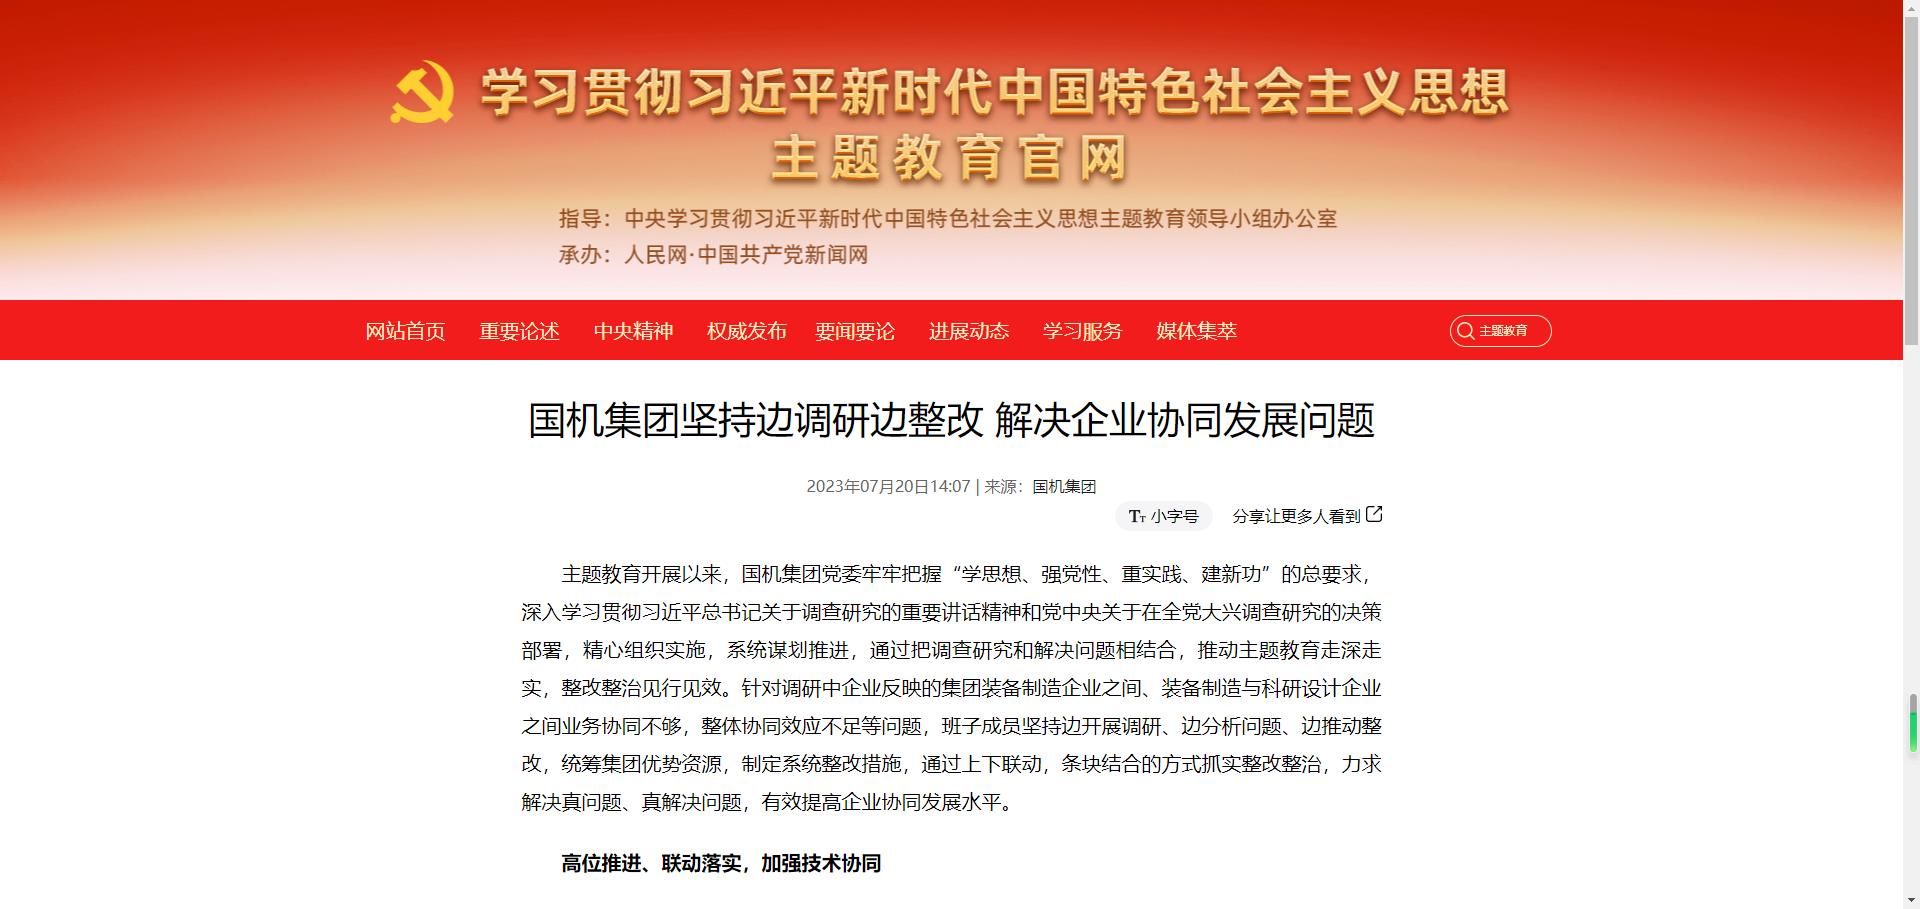 主题教育官网：（中国）官方网站坚持边调研边整改 解决企业协同发展问题.jpg